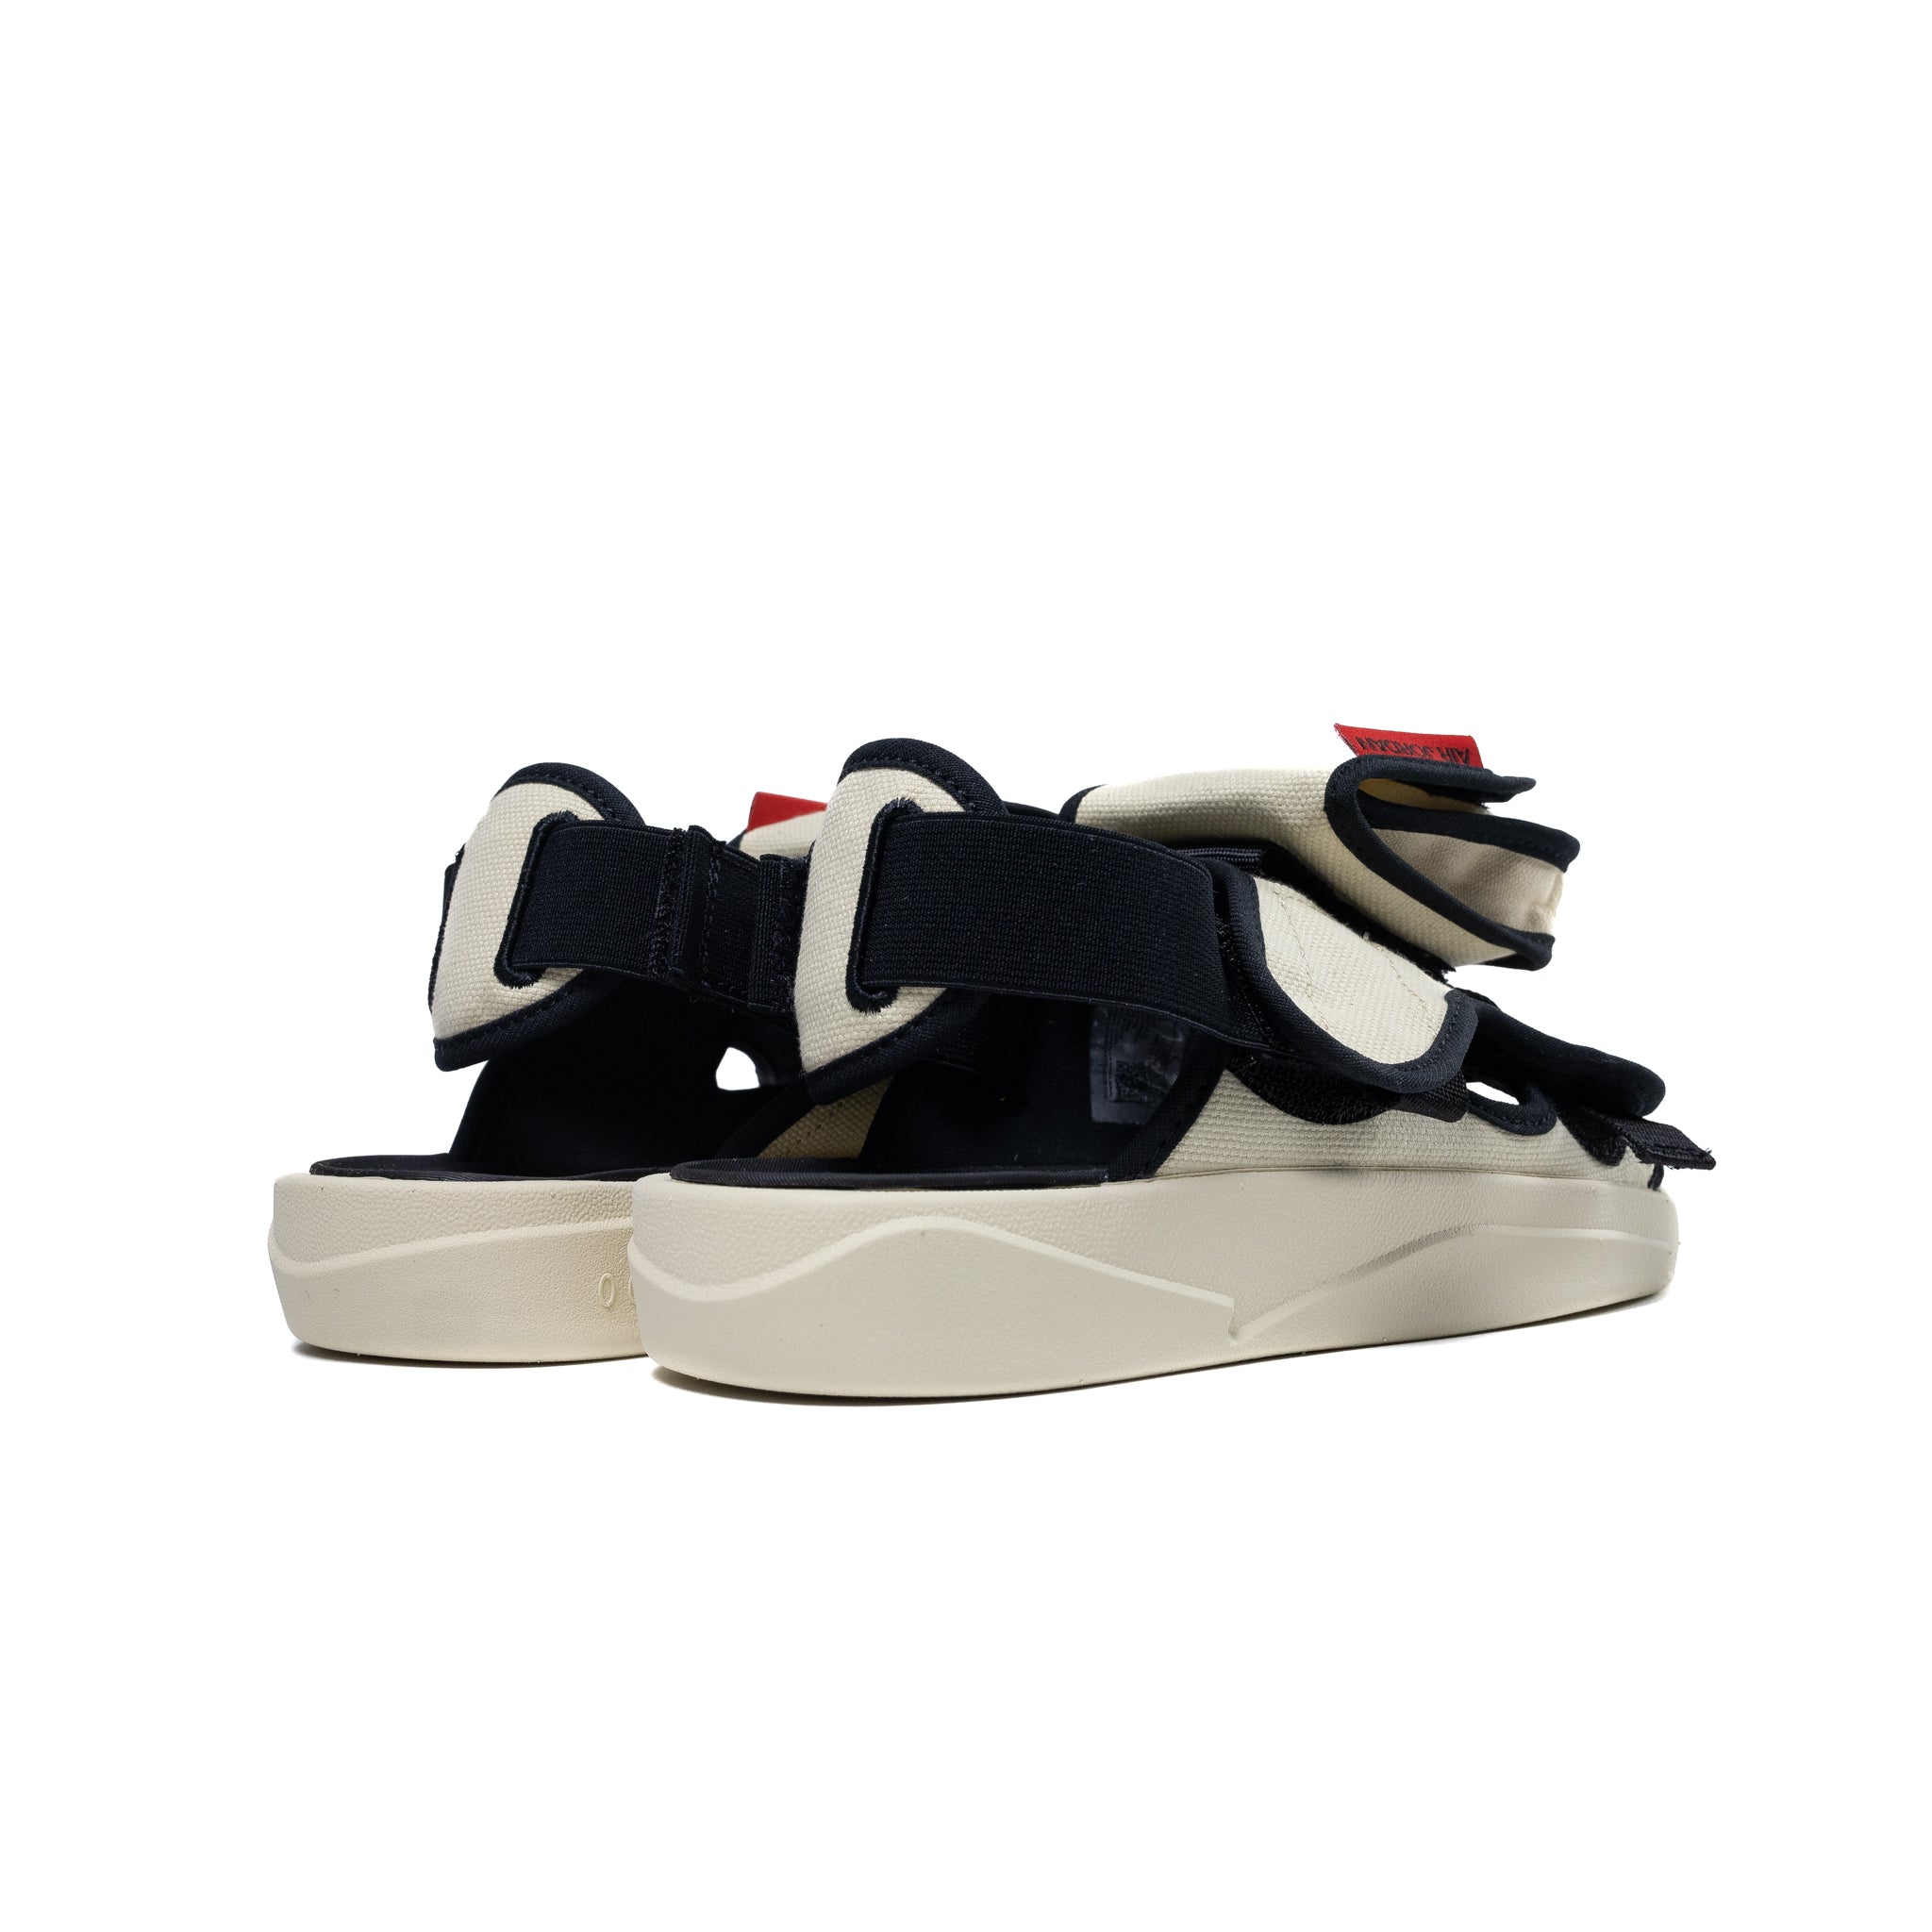 Air Jordan LS Sandals 'Beach'